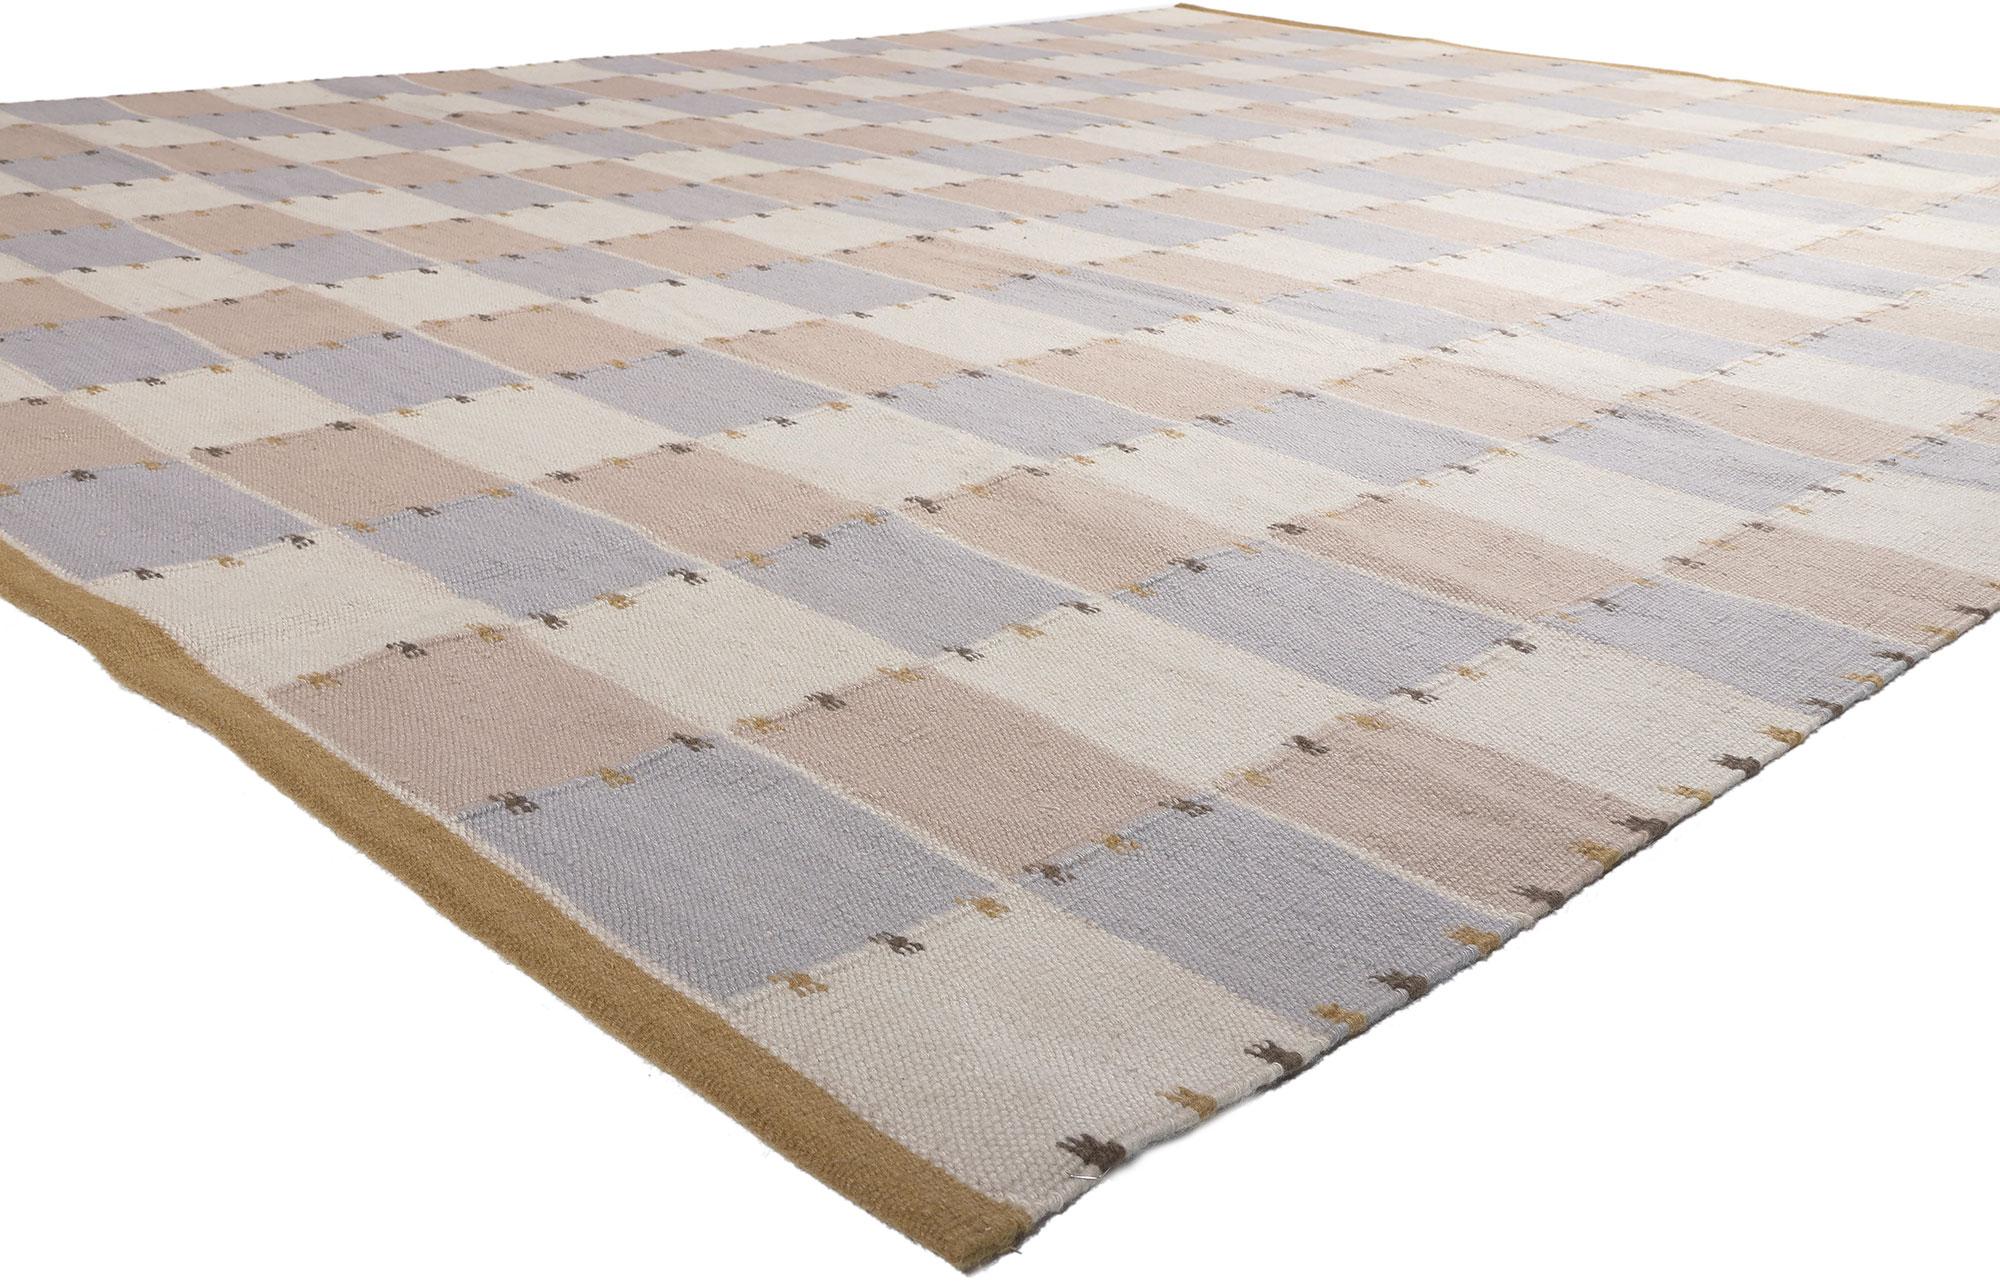 30950 Neuer schwedisch inspirierter Kilim-Teppich, 10'03 x 12'09.
Skandinavische Moderne trifft auf minimalistischen Kubismus in diesem handgewebten, schwedisch inspirierten Kelimteppich aus Wolle. Das einfache, lineare Design und die minimale